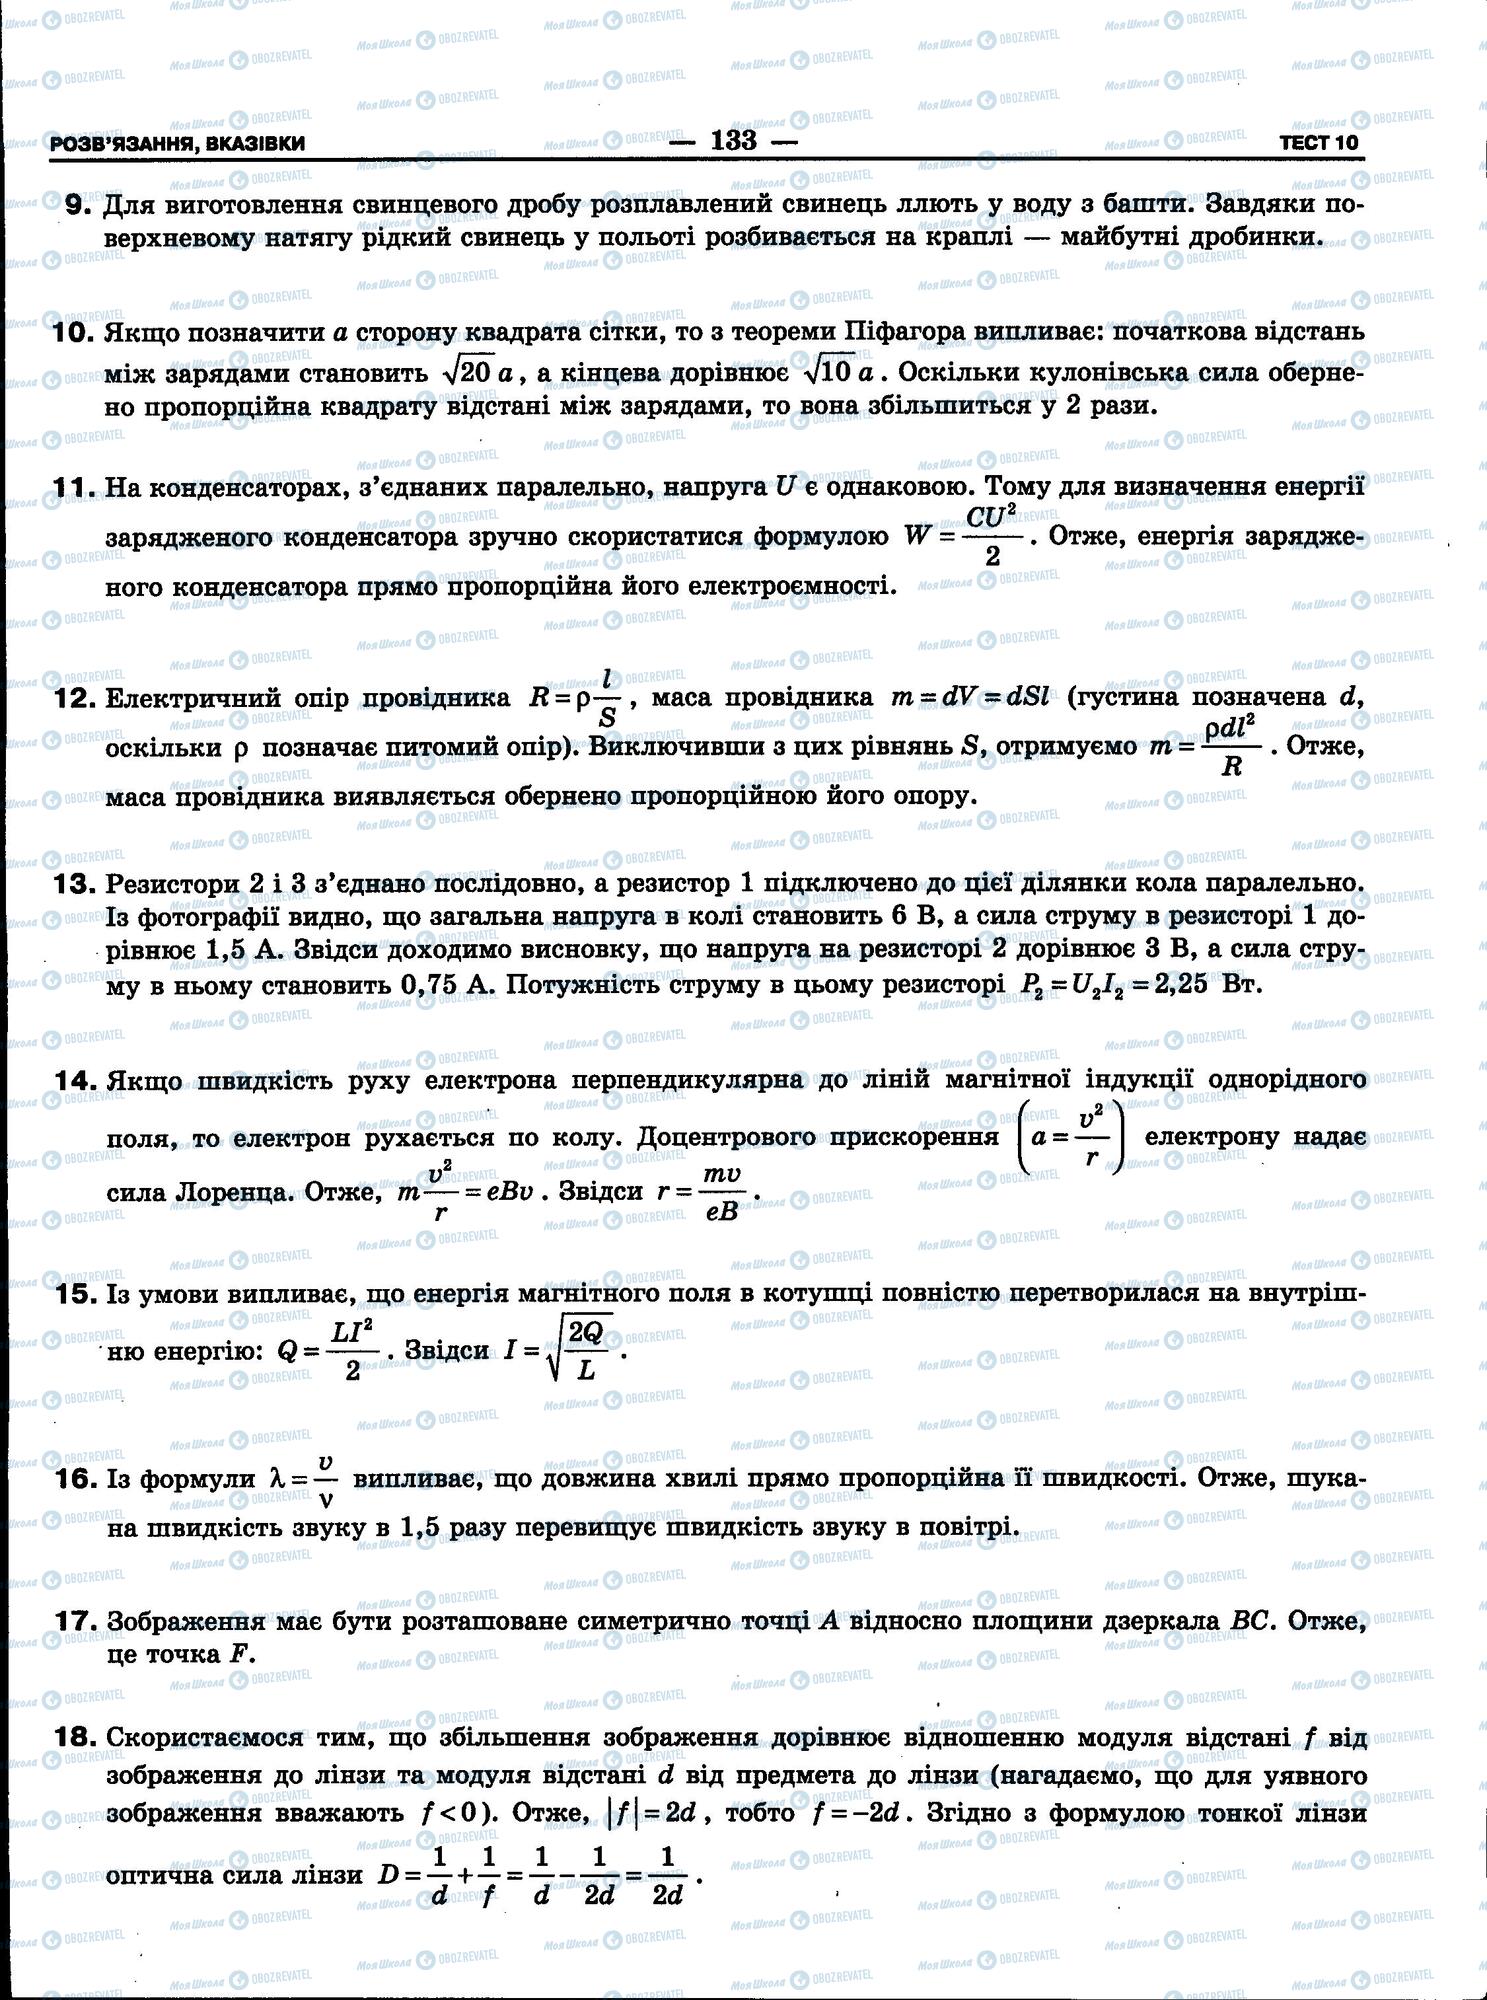 ЗНО Физика 11 класс страница 133